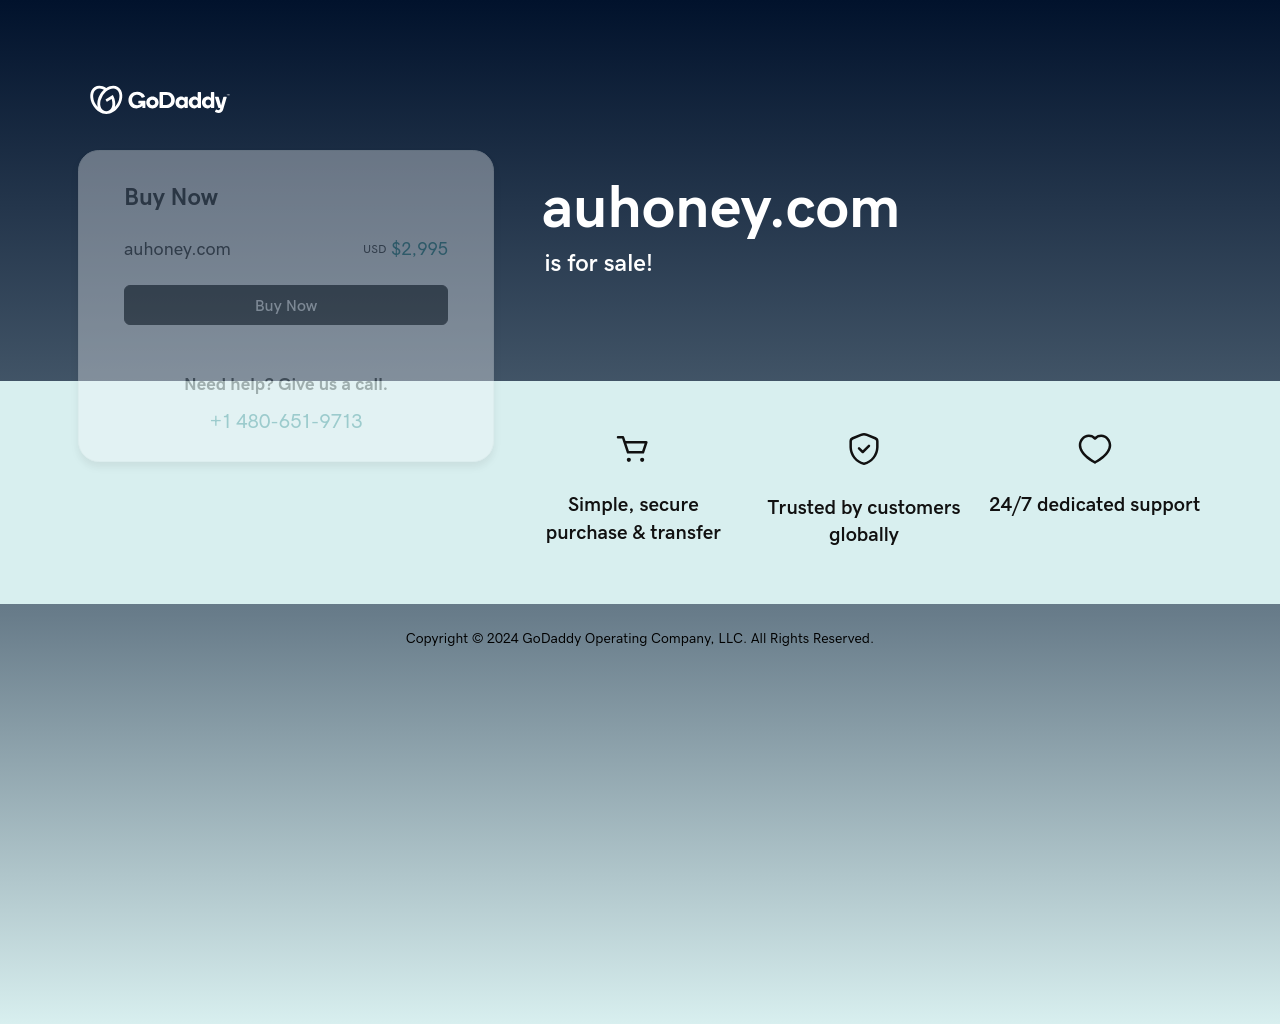 auhoney.com